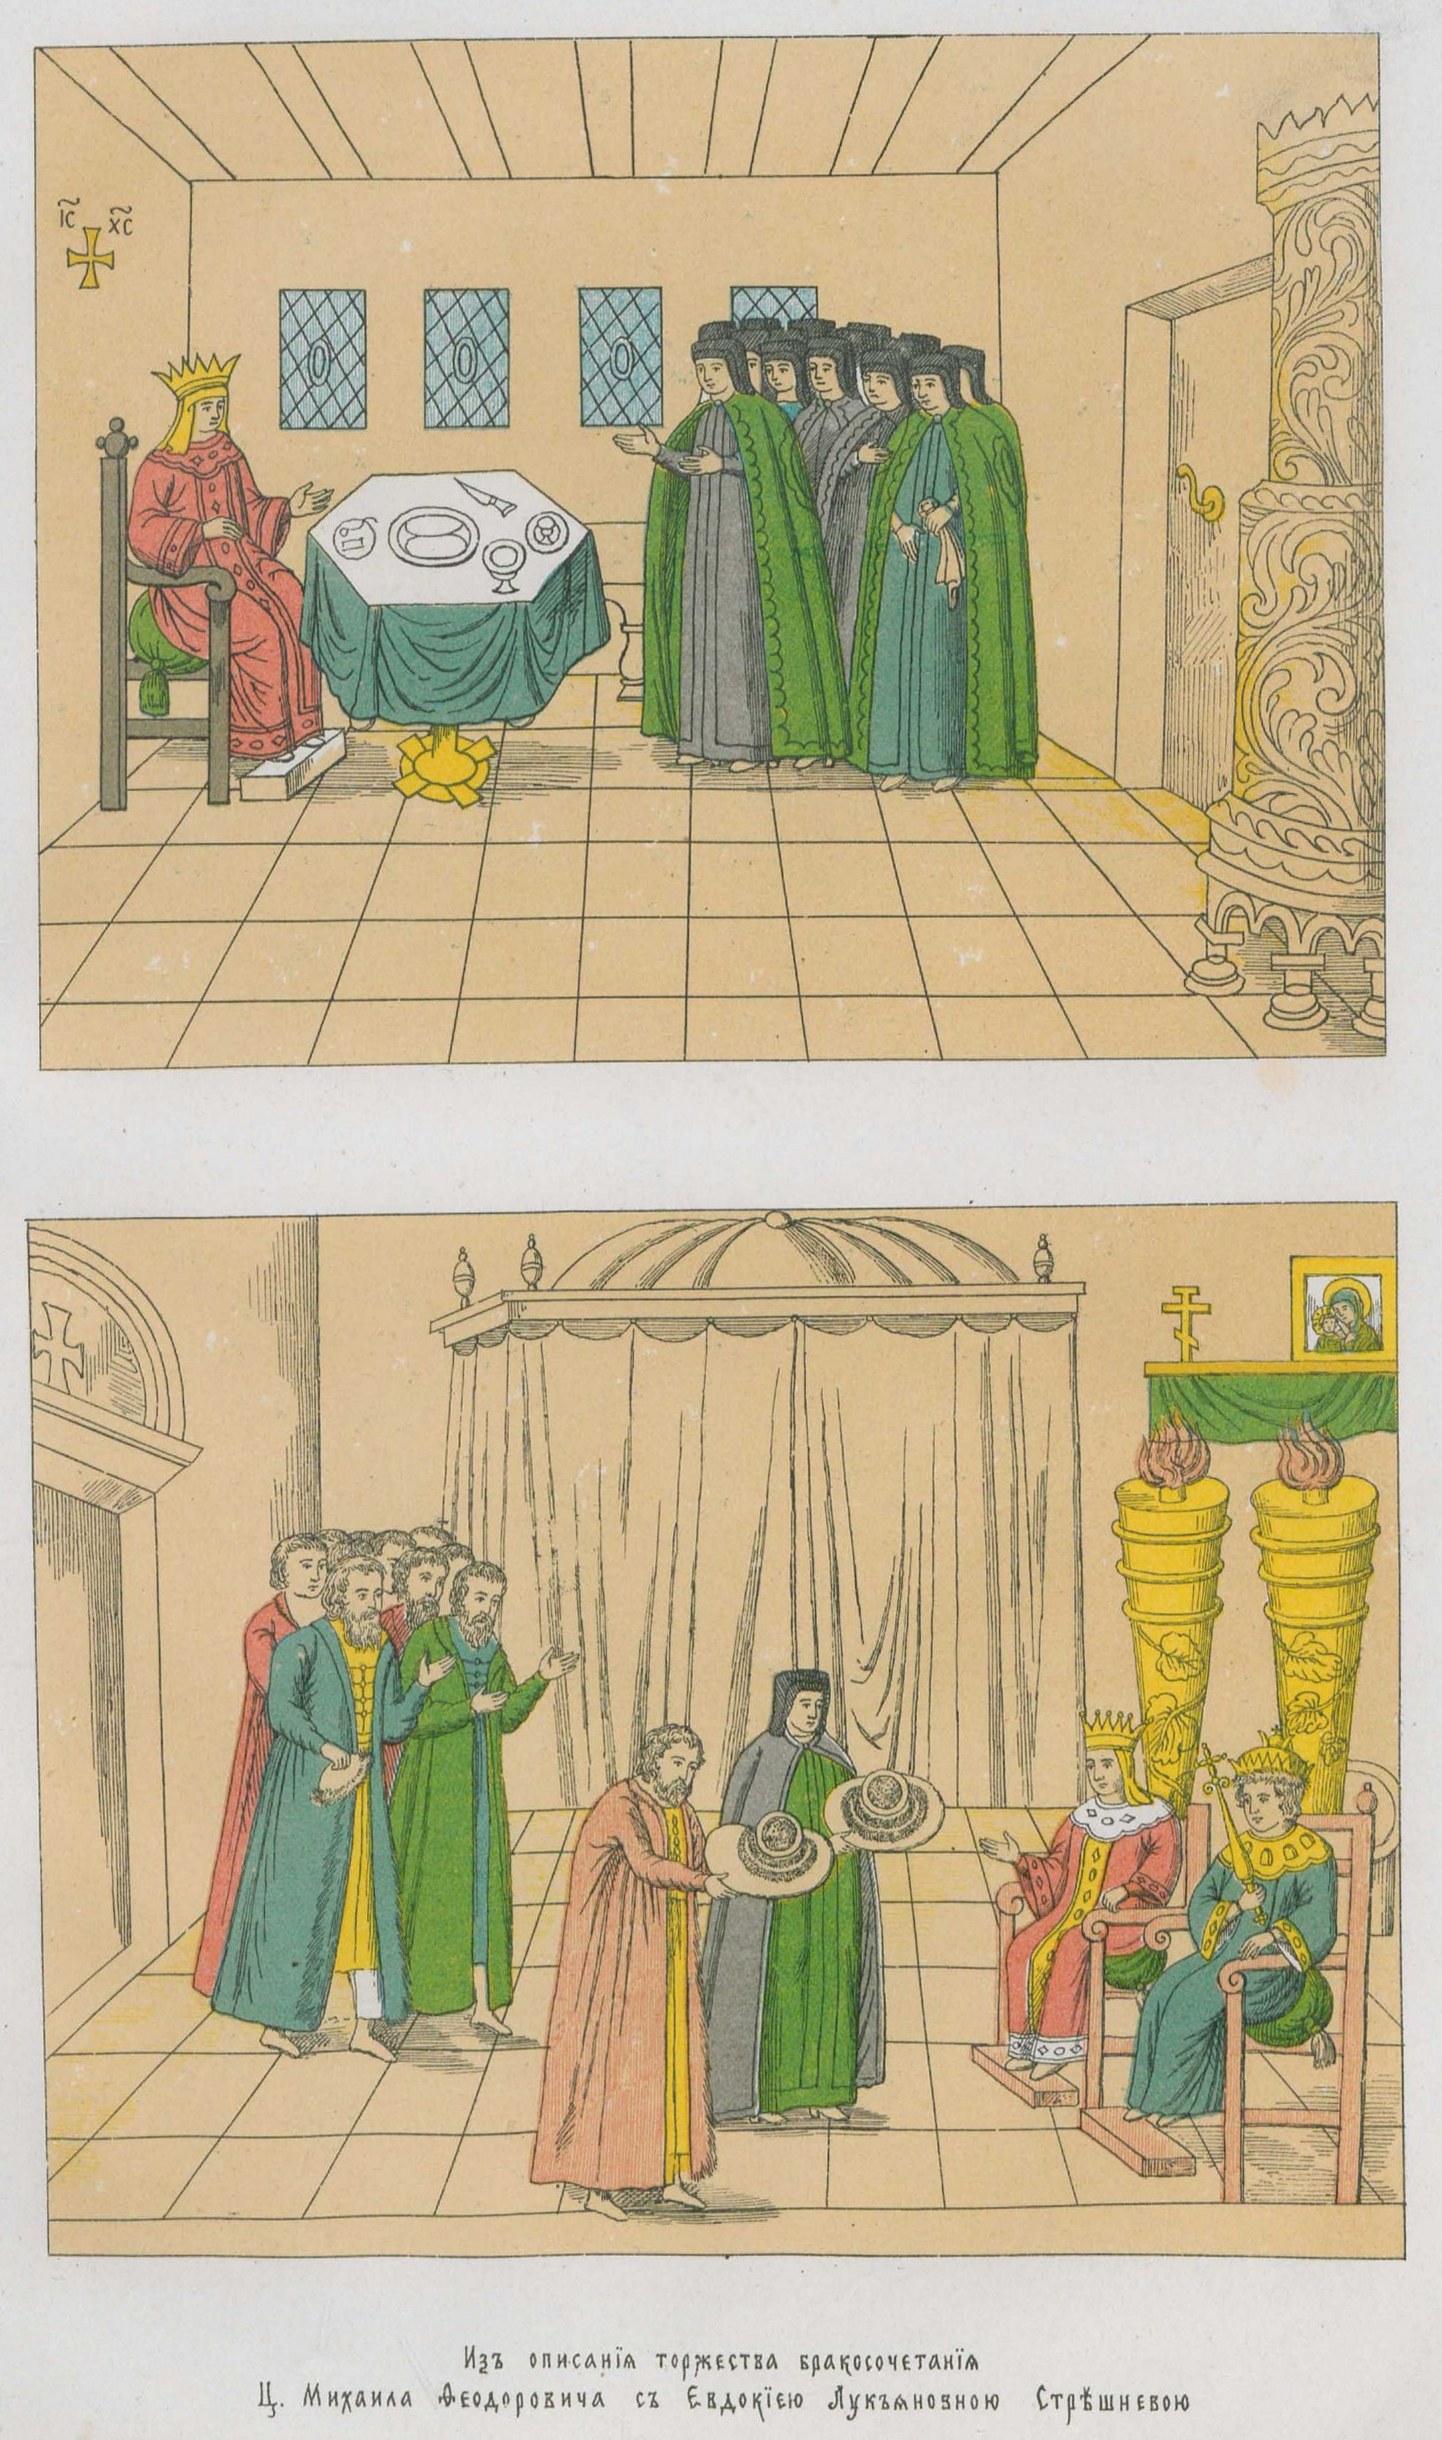 Из описания торжества бракосочетания Царя Михаила Федоровича с Евдокией Лукьяновной Стрешневой